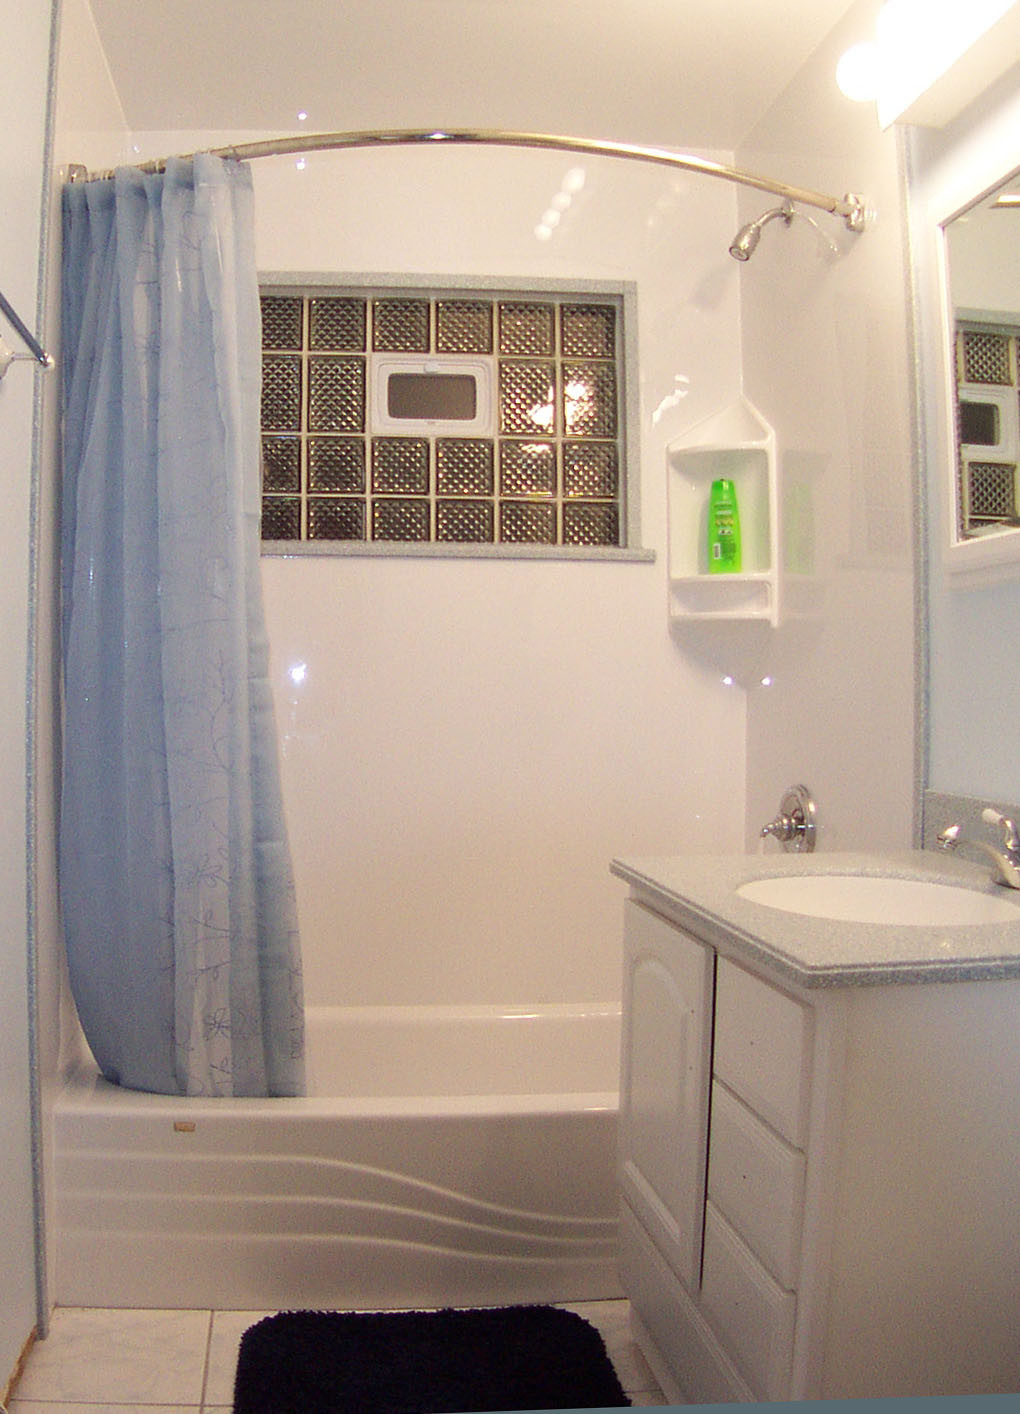 Bathroom Designs For Small Bathrooms
 Stylish Small Bathroom Design Ideas for a Space Efficient